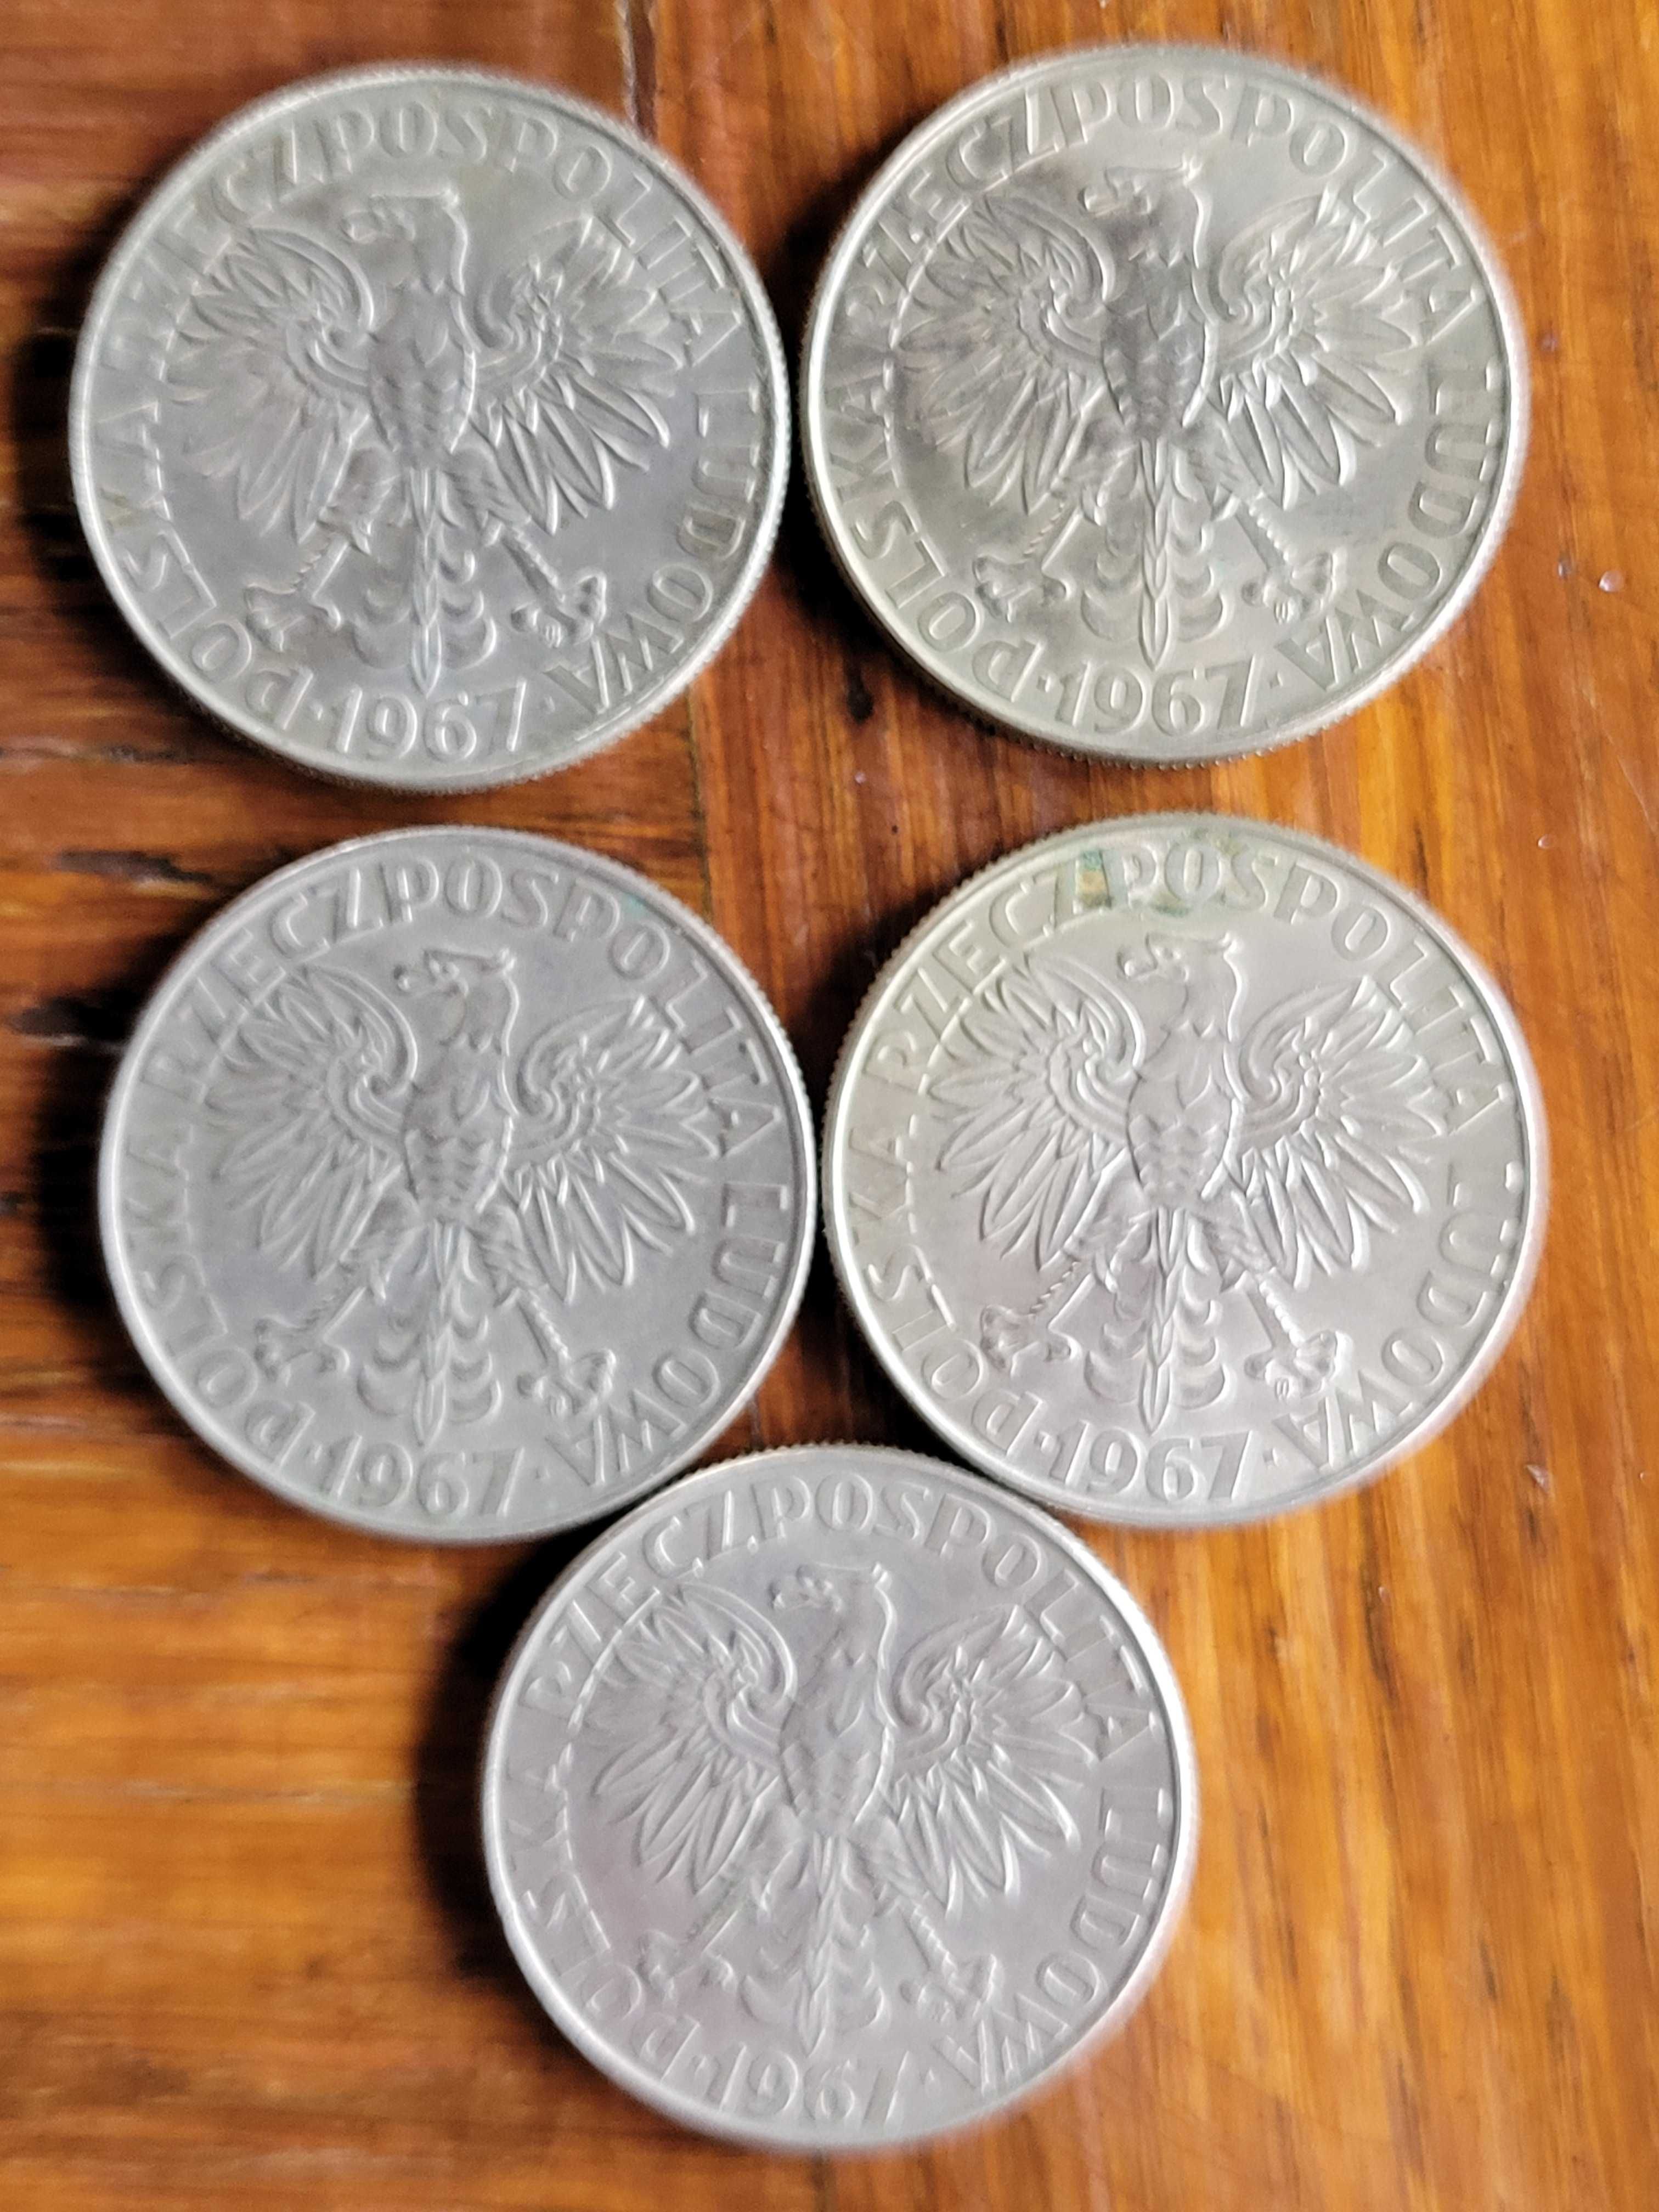 Stare monety z PRL,Maria Skłodowska Curie 1967